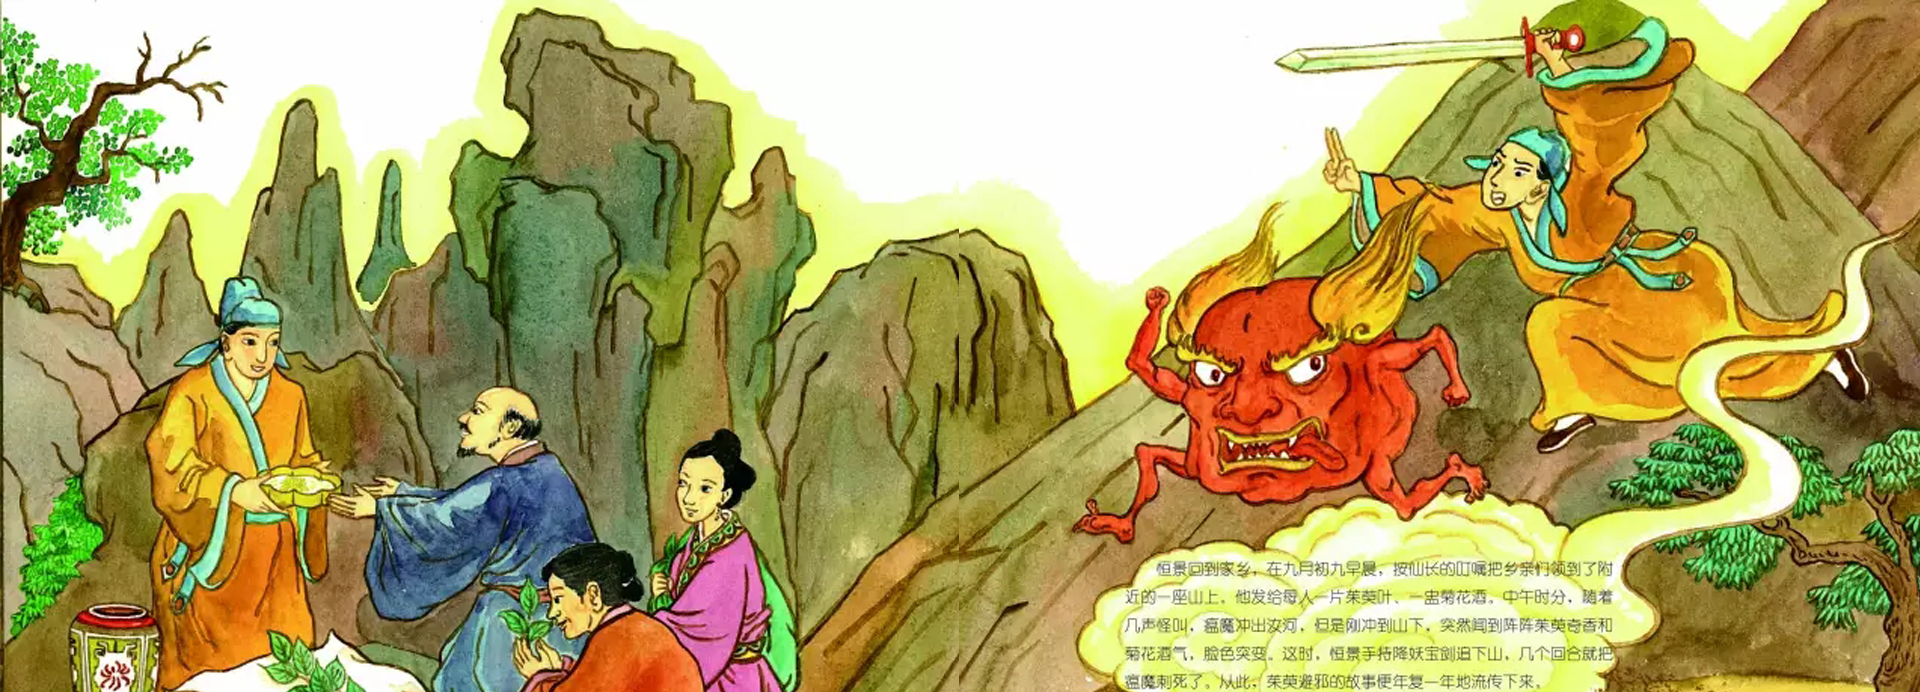 有声绘本《重阳节》:中国传统节日重阳节的由来